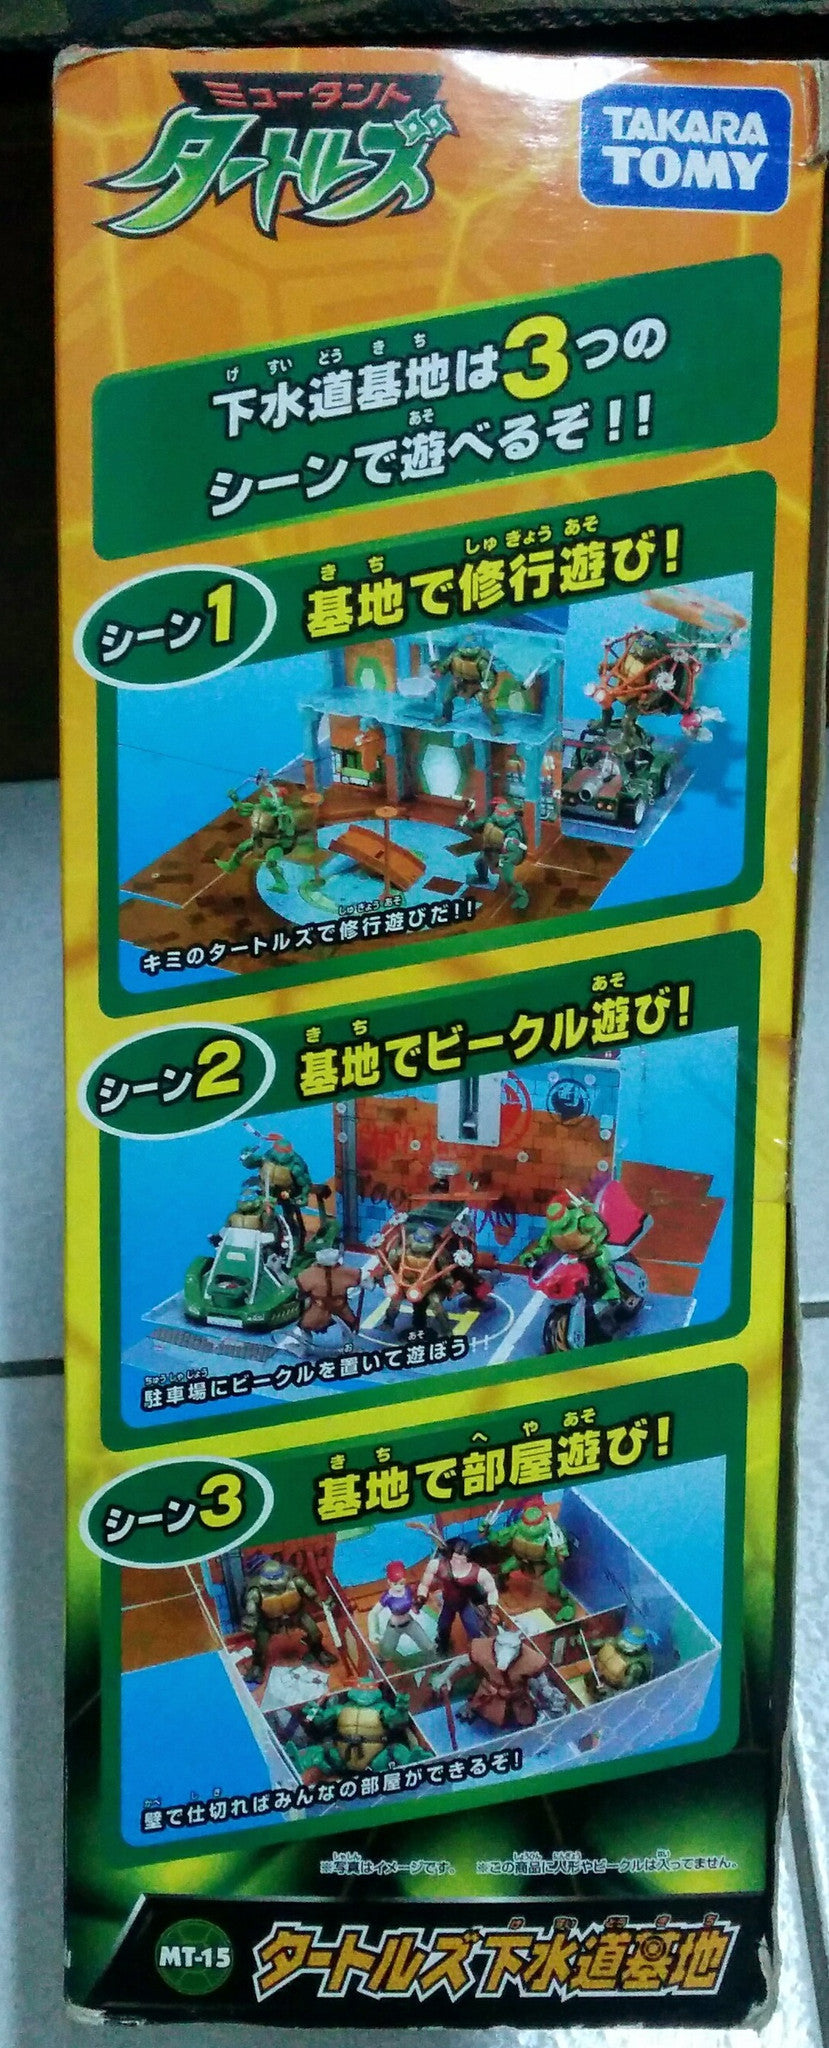 Takara Tomy TMNT Teenage Mutant Ninja Turtles MT-15 Sewer Base Play Set - Lavits Figure
 - 3